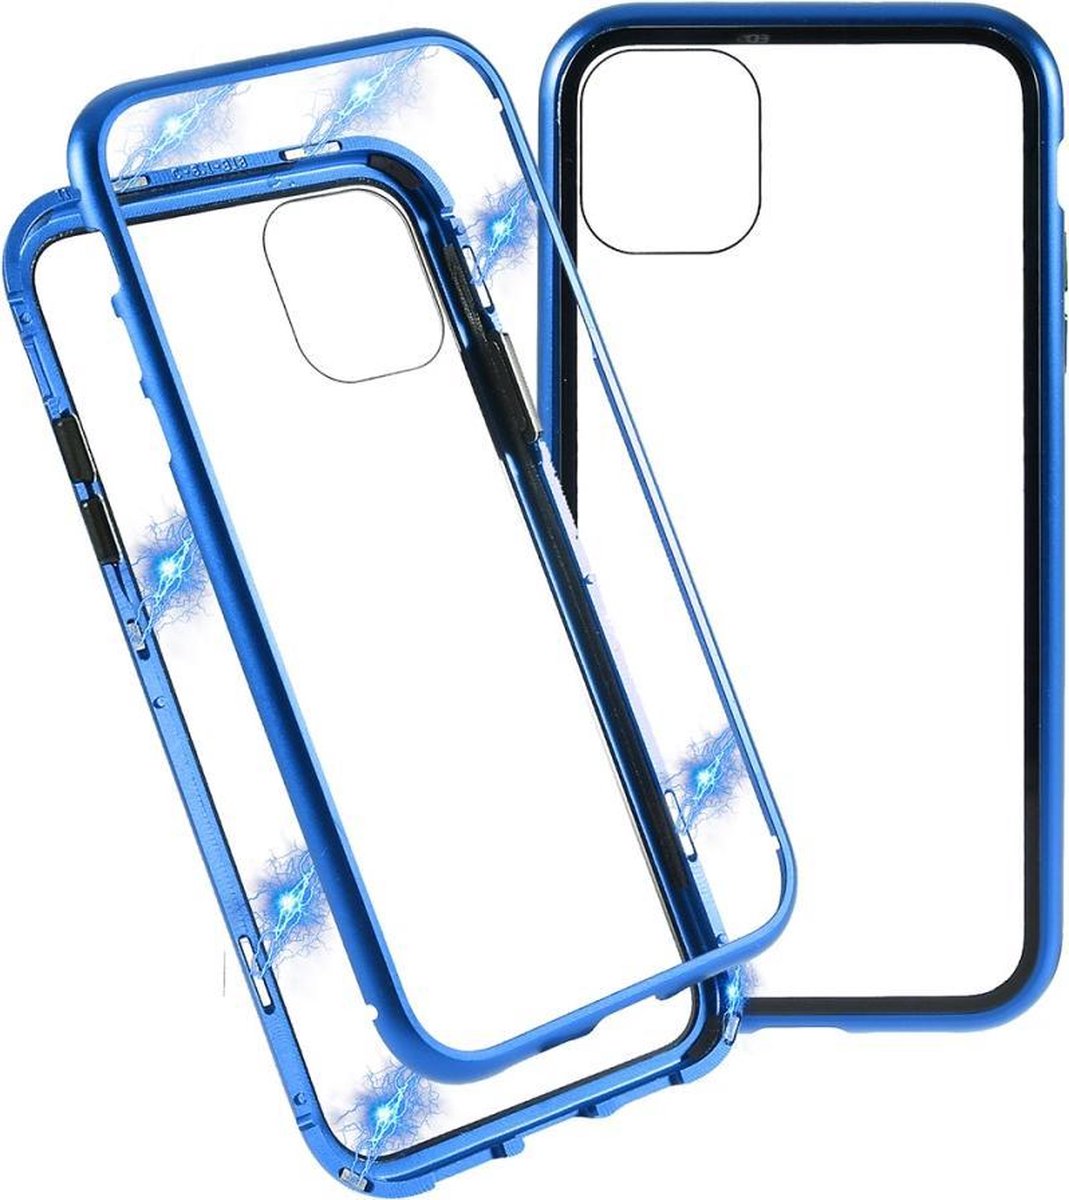 Hardcase met metalen frame voor iPhone 11 Pro 5.8 inch - Blauw